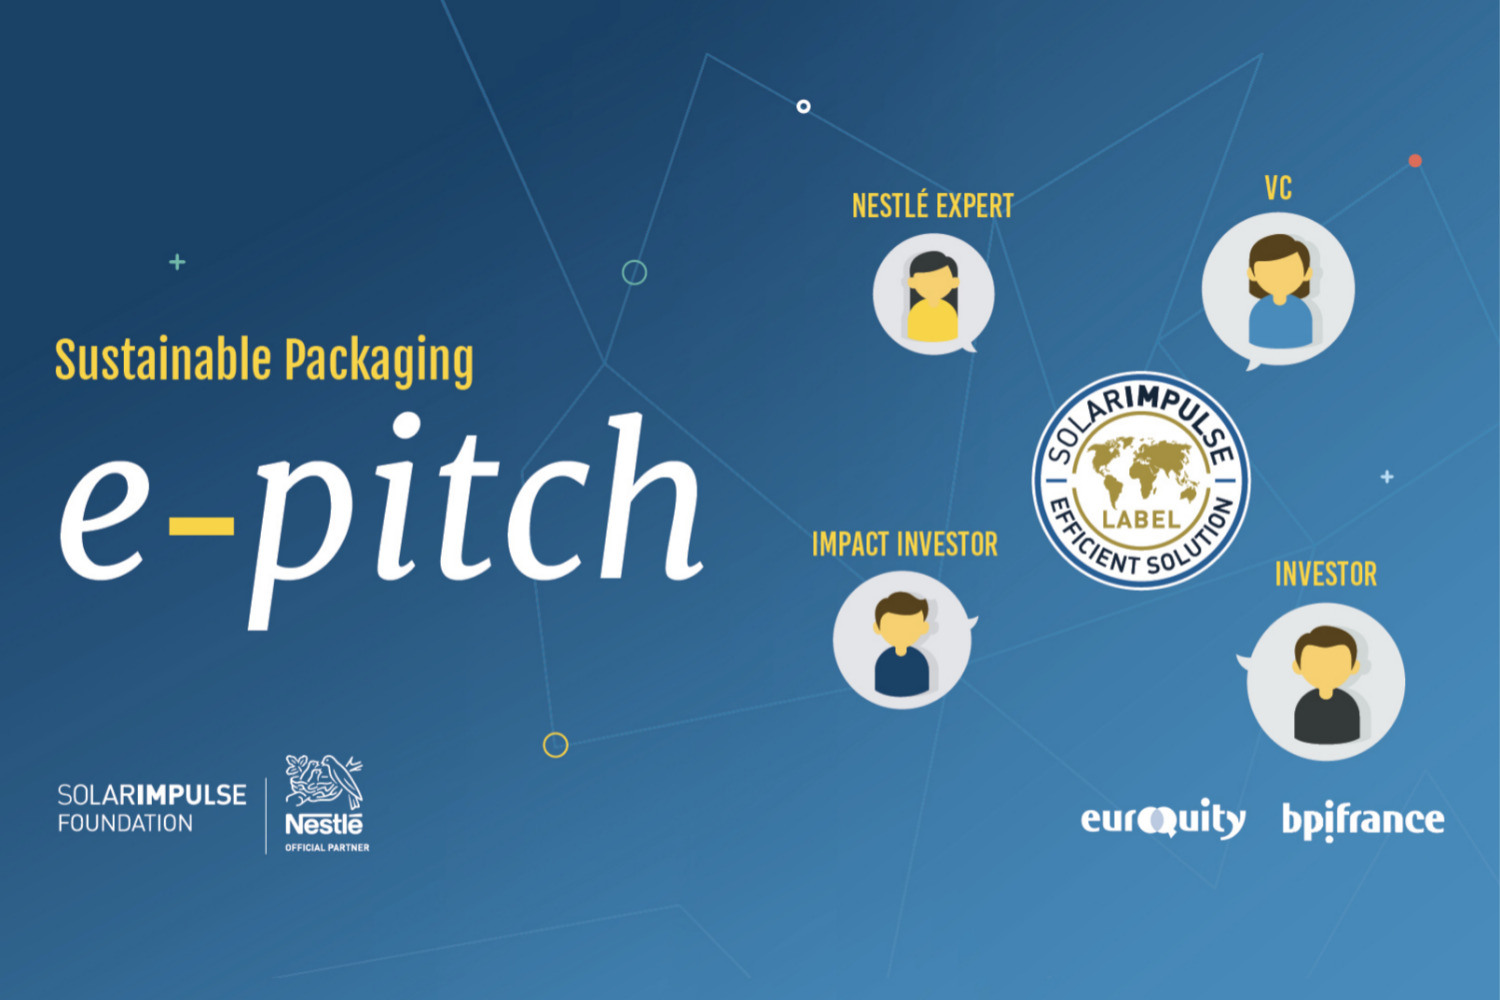 E-Pitch Solar Impulse Investment - "Emballage et nouveaux matériaux" - SIF x Nestlé